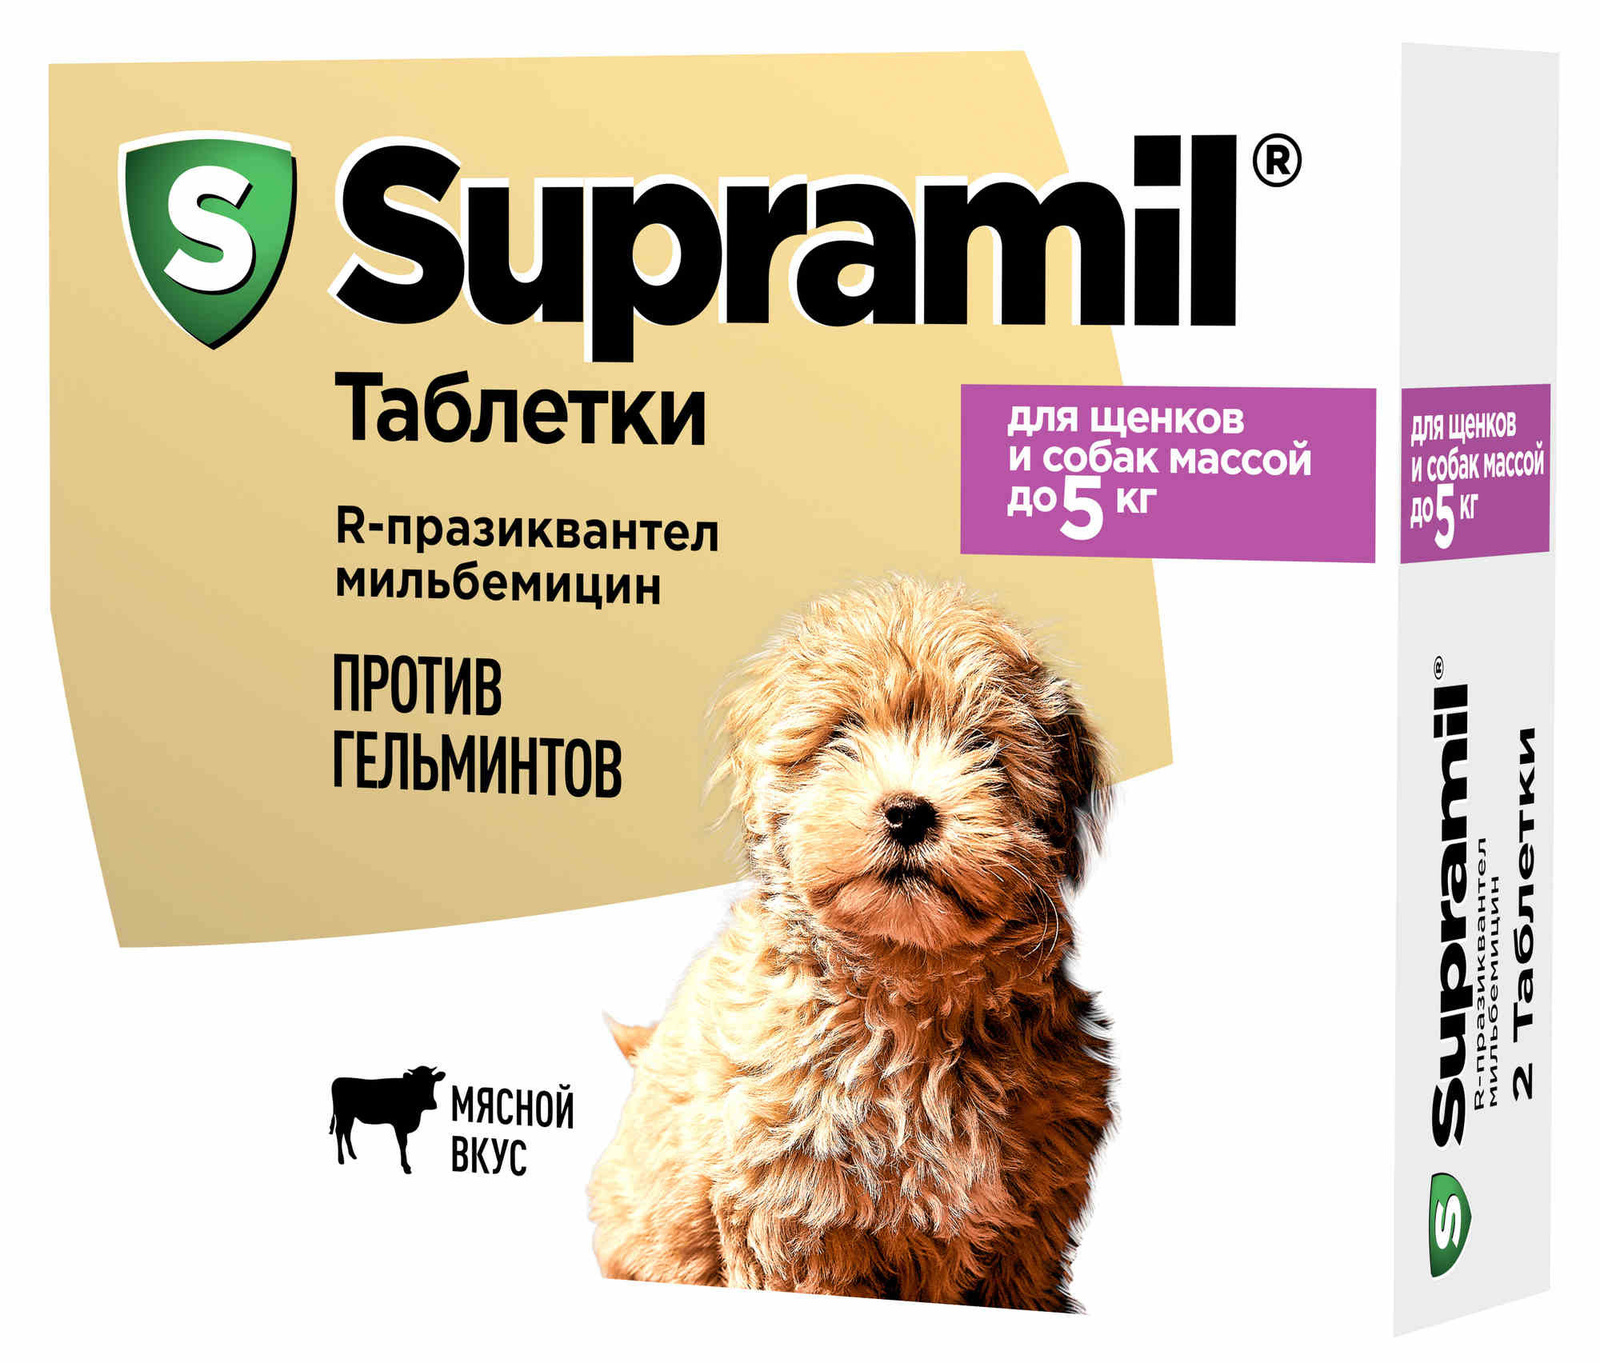 Астрафарм антигельминтный препарат Supramil  для щенков и собак массой до 5 кг, таблетки (2 таб.)